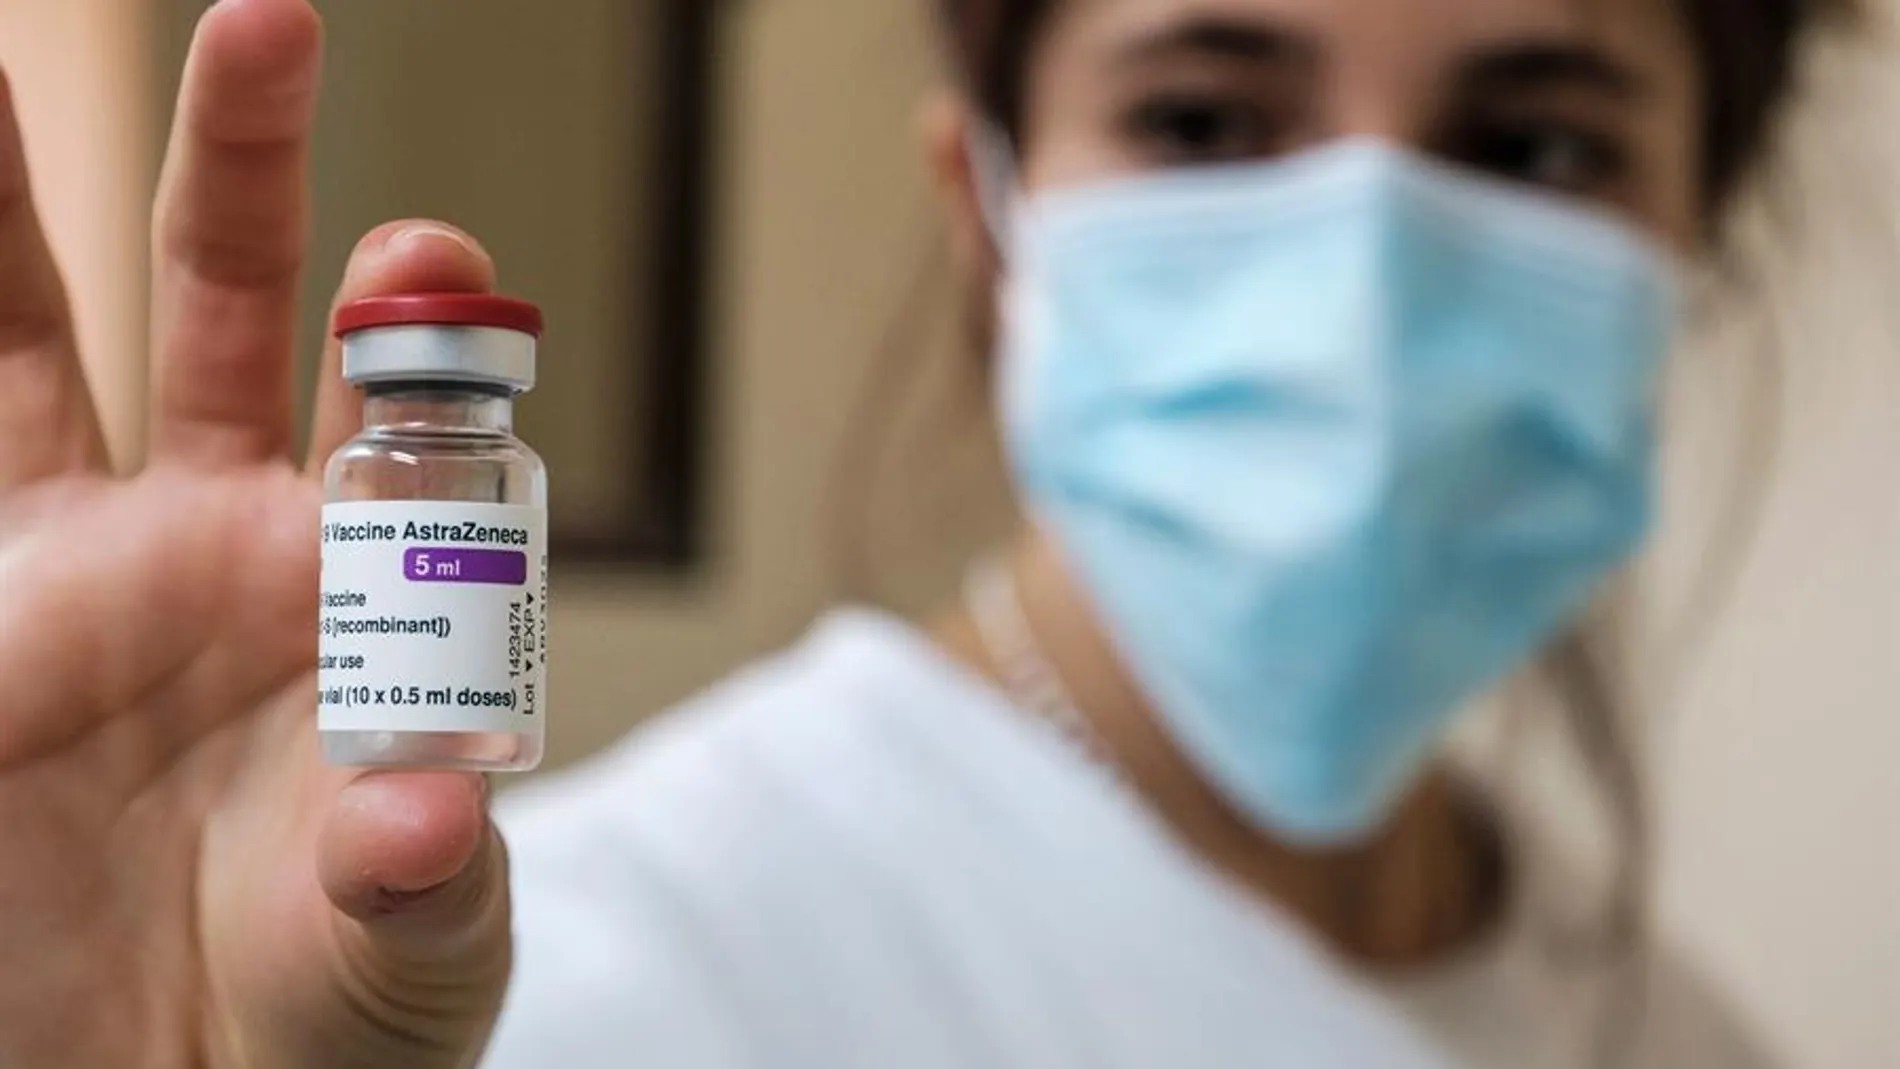 Una sanitaria sostiene un vial de la vacuna de AstraZeneca